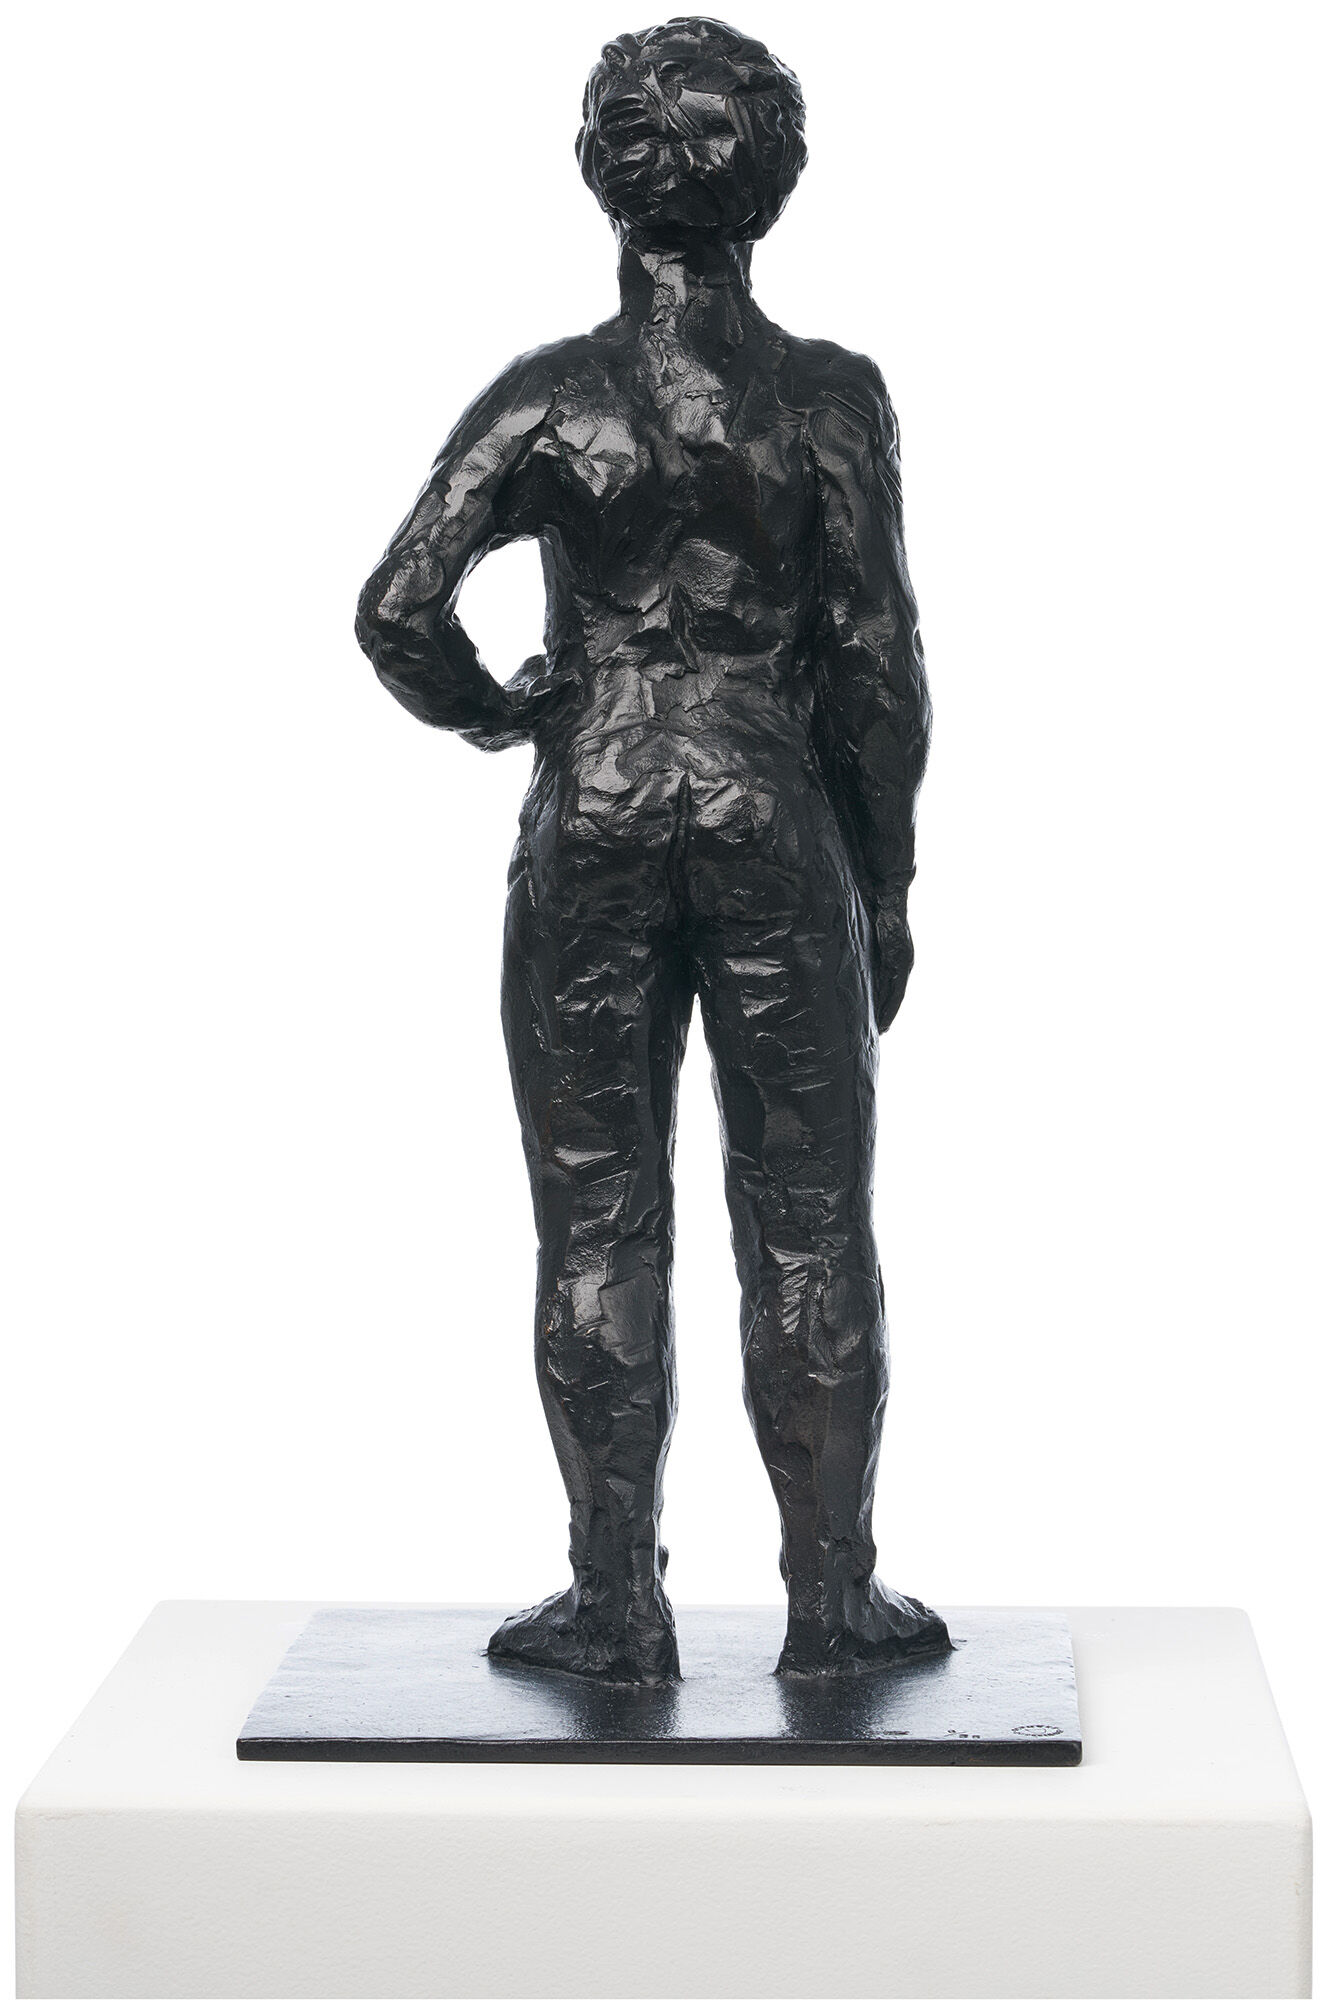 Skulptur "Stehender nackter Mann" (1999), Bronze von Stephan Balkenhol